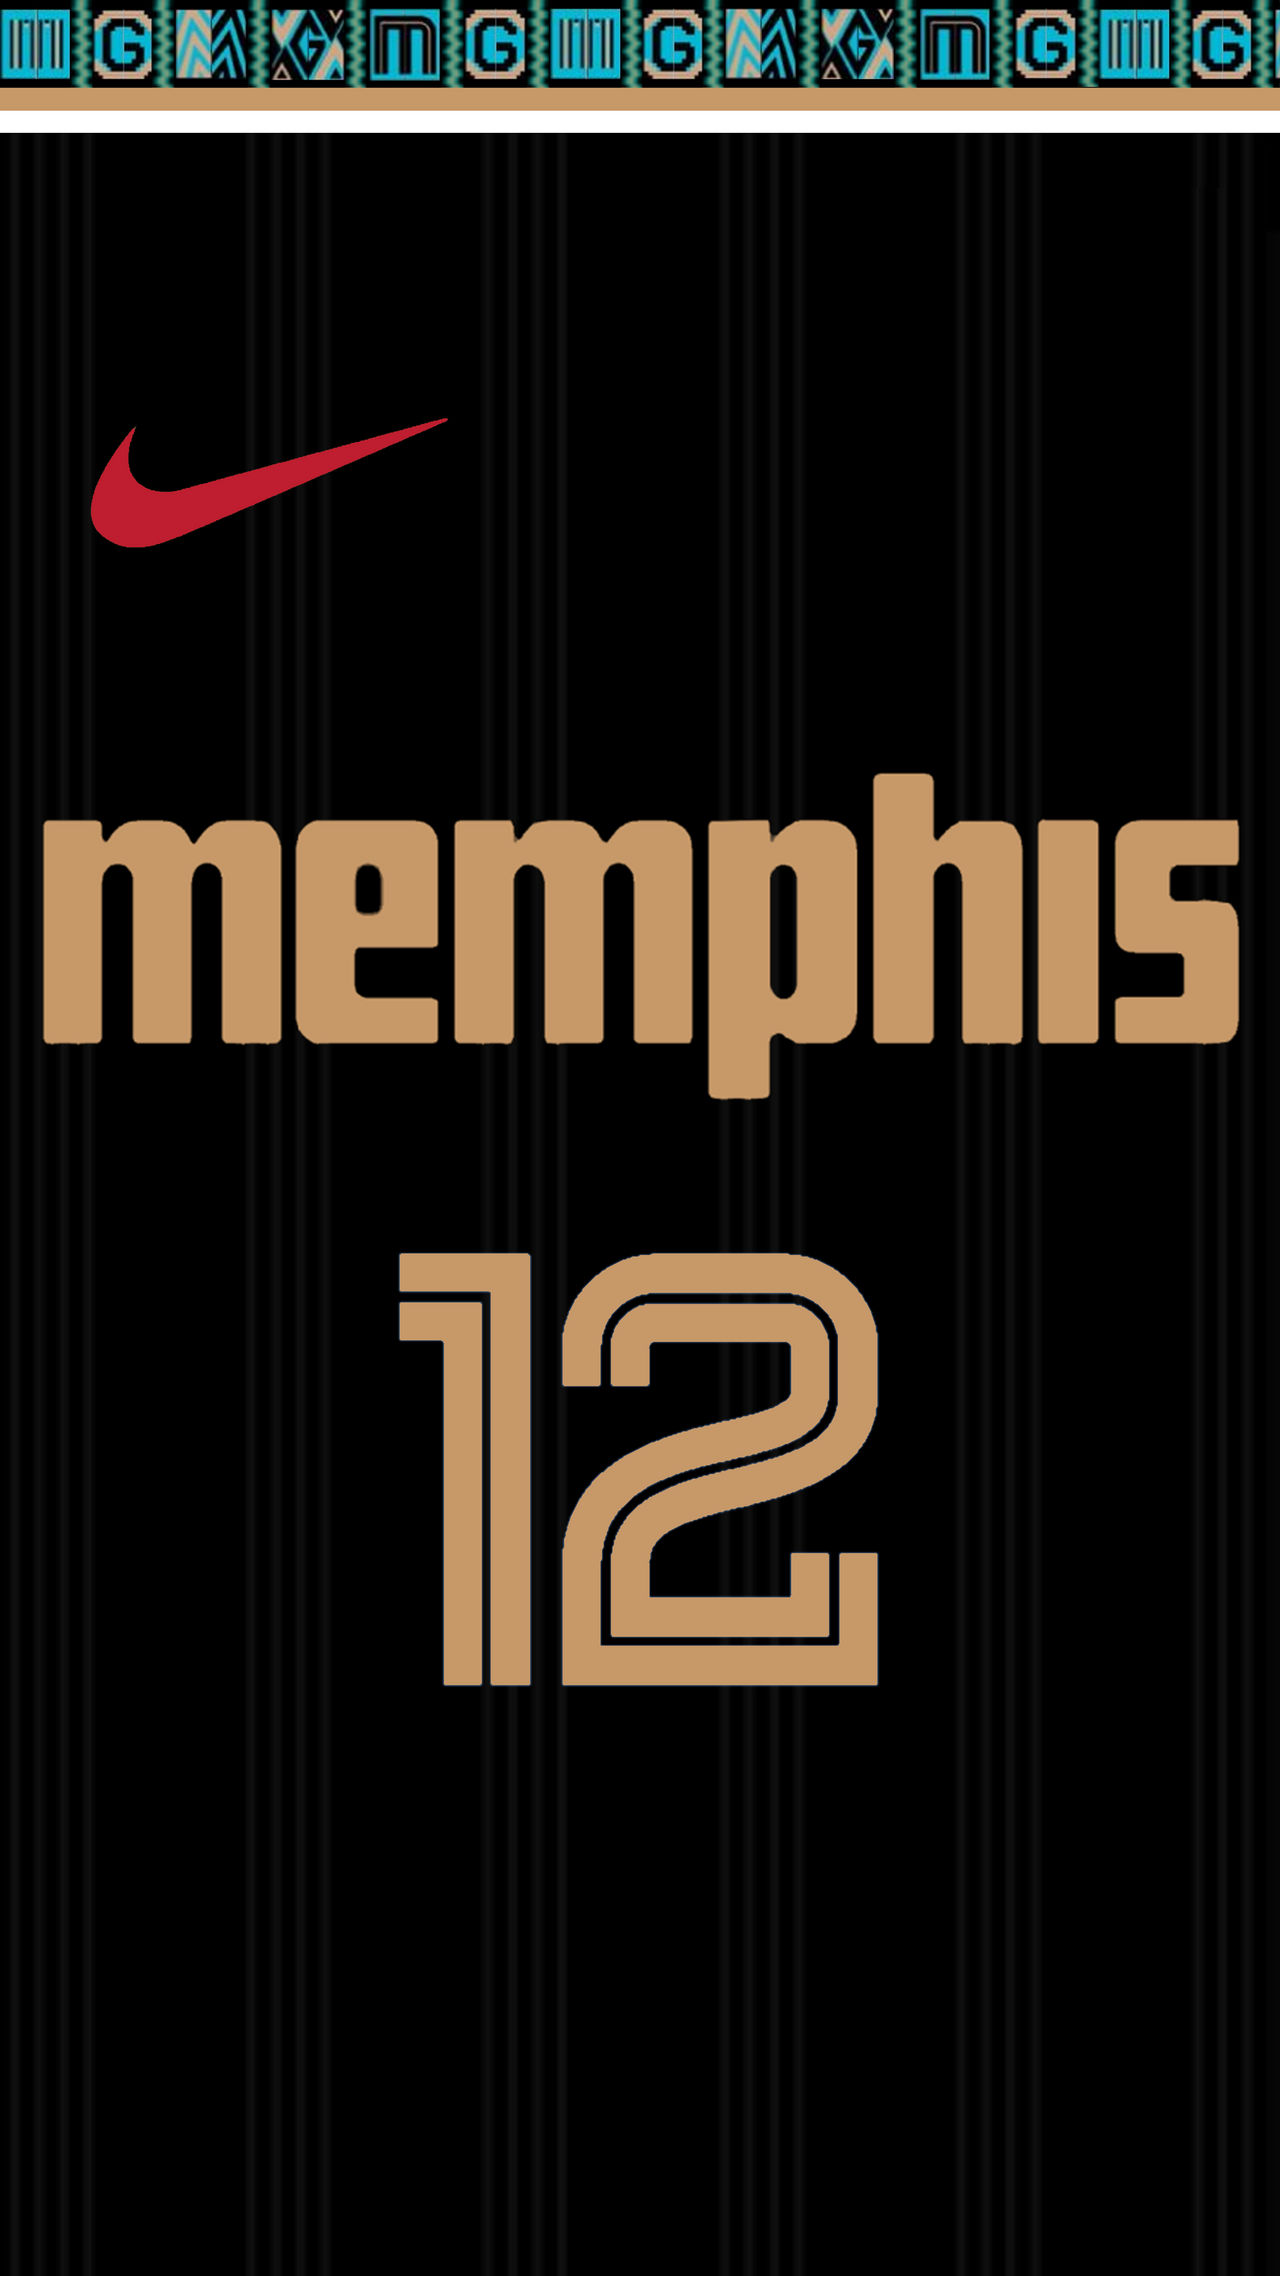 Memphis Grizzlies 2020-21 City Jersey by llu258 on DeviantArt